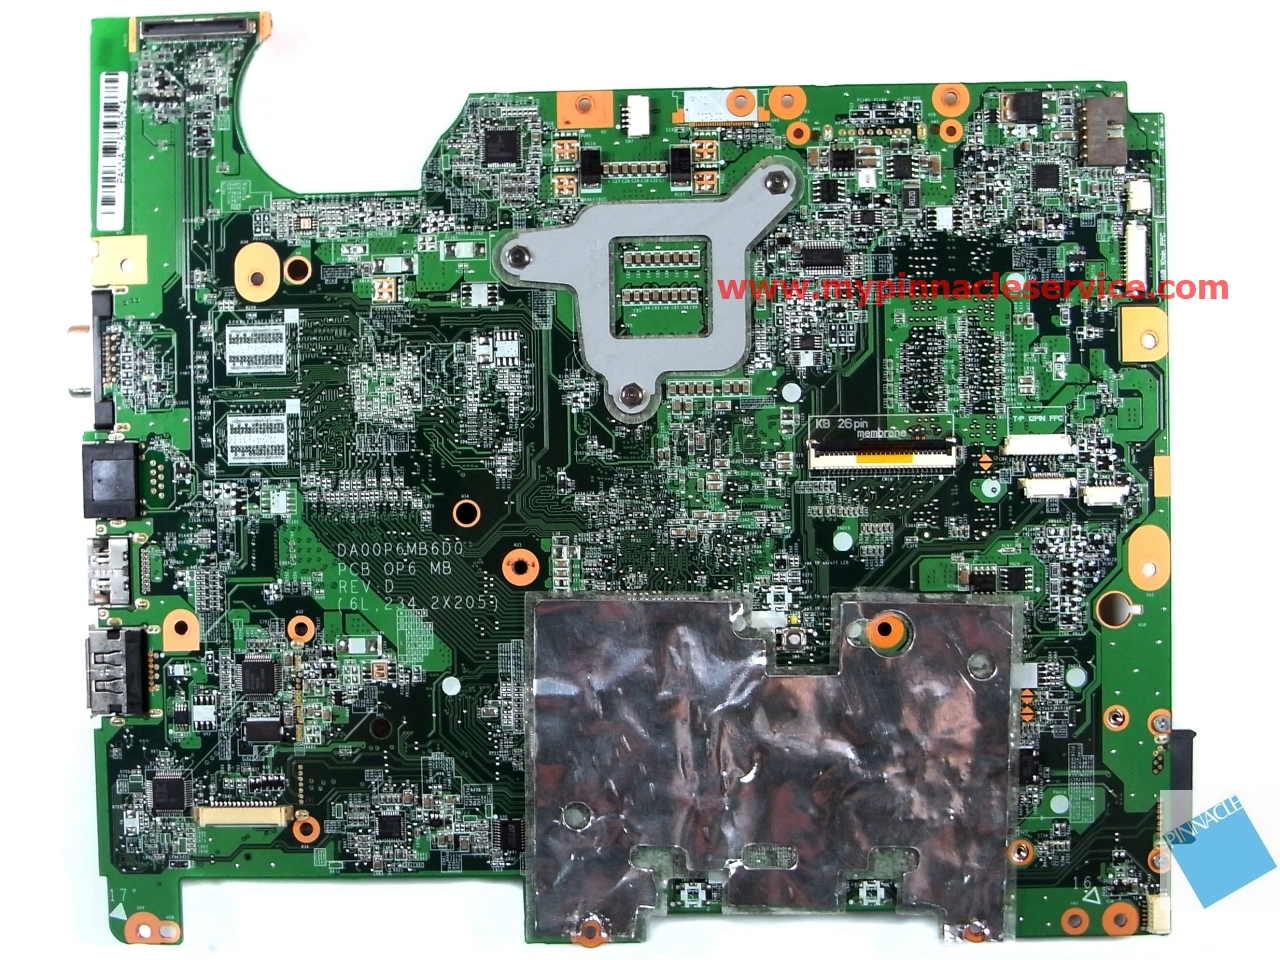 578701-001-motherboard-for-hp-g71-cq71-da0op6mb6d0-r0011781.jpg